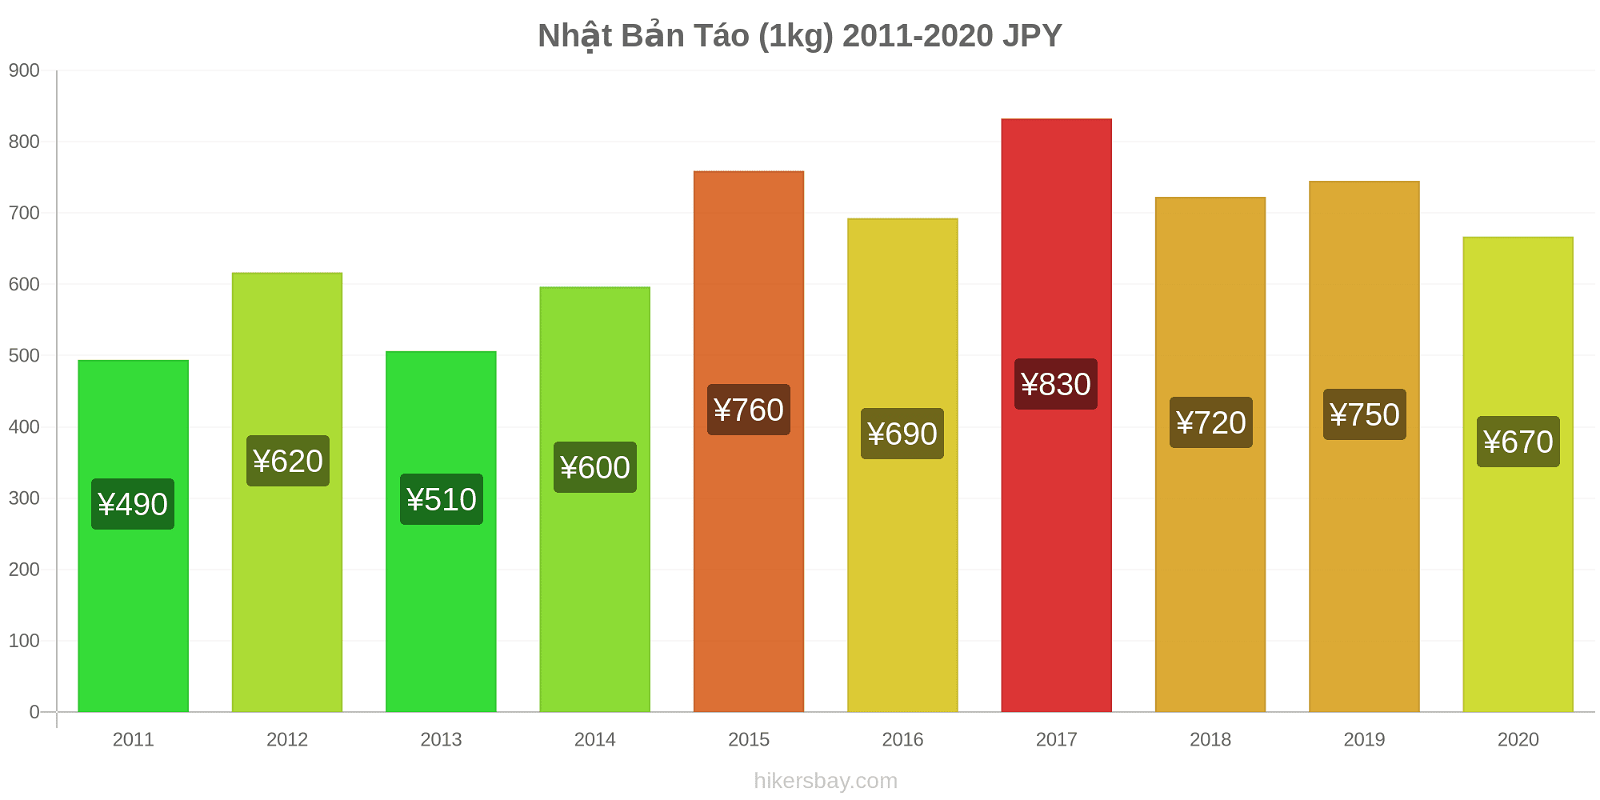 Nhật Bản thay đổi giá Táo (1kg) hikersbay.com